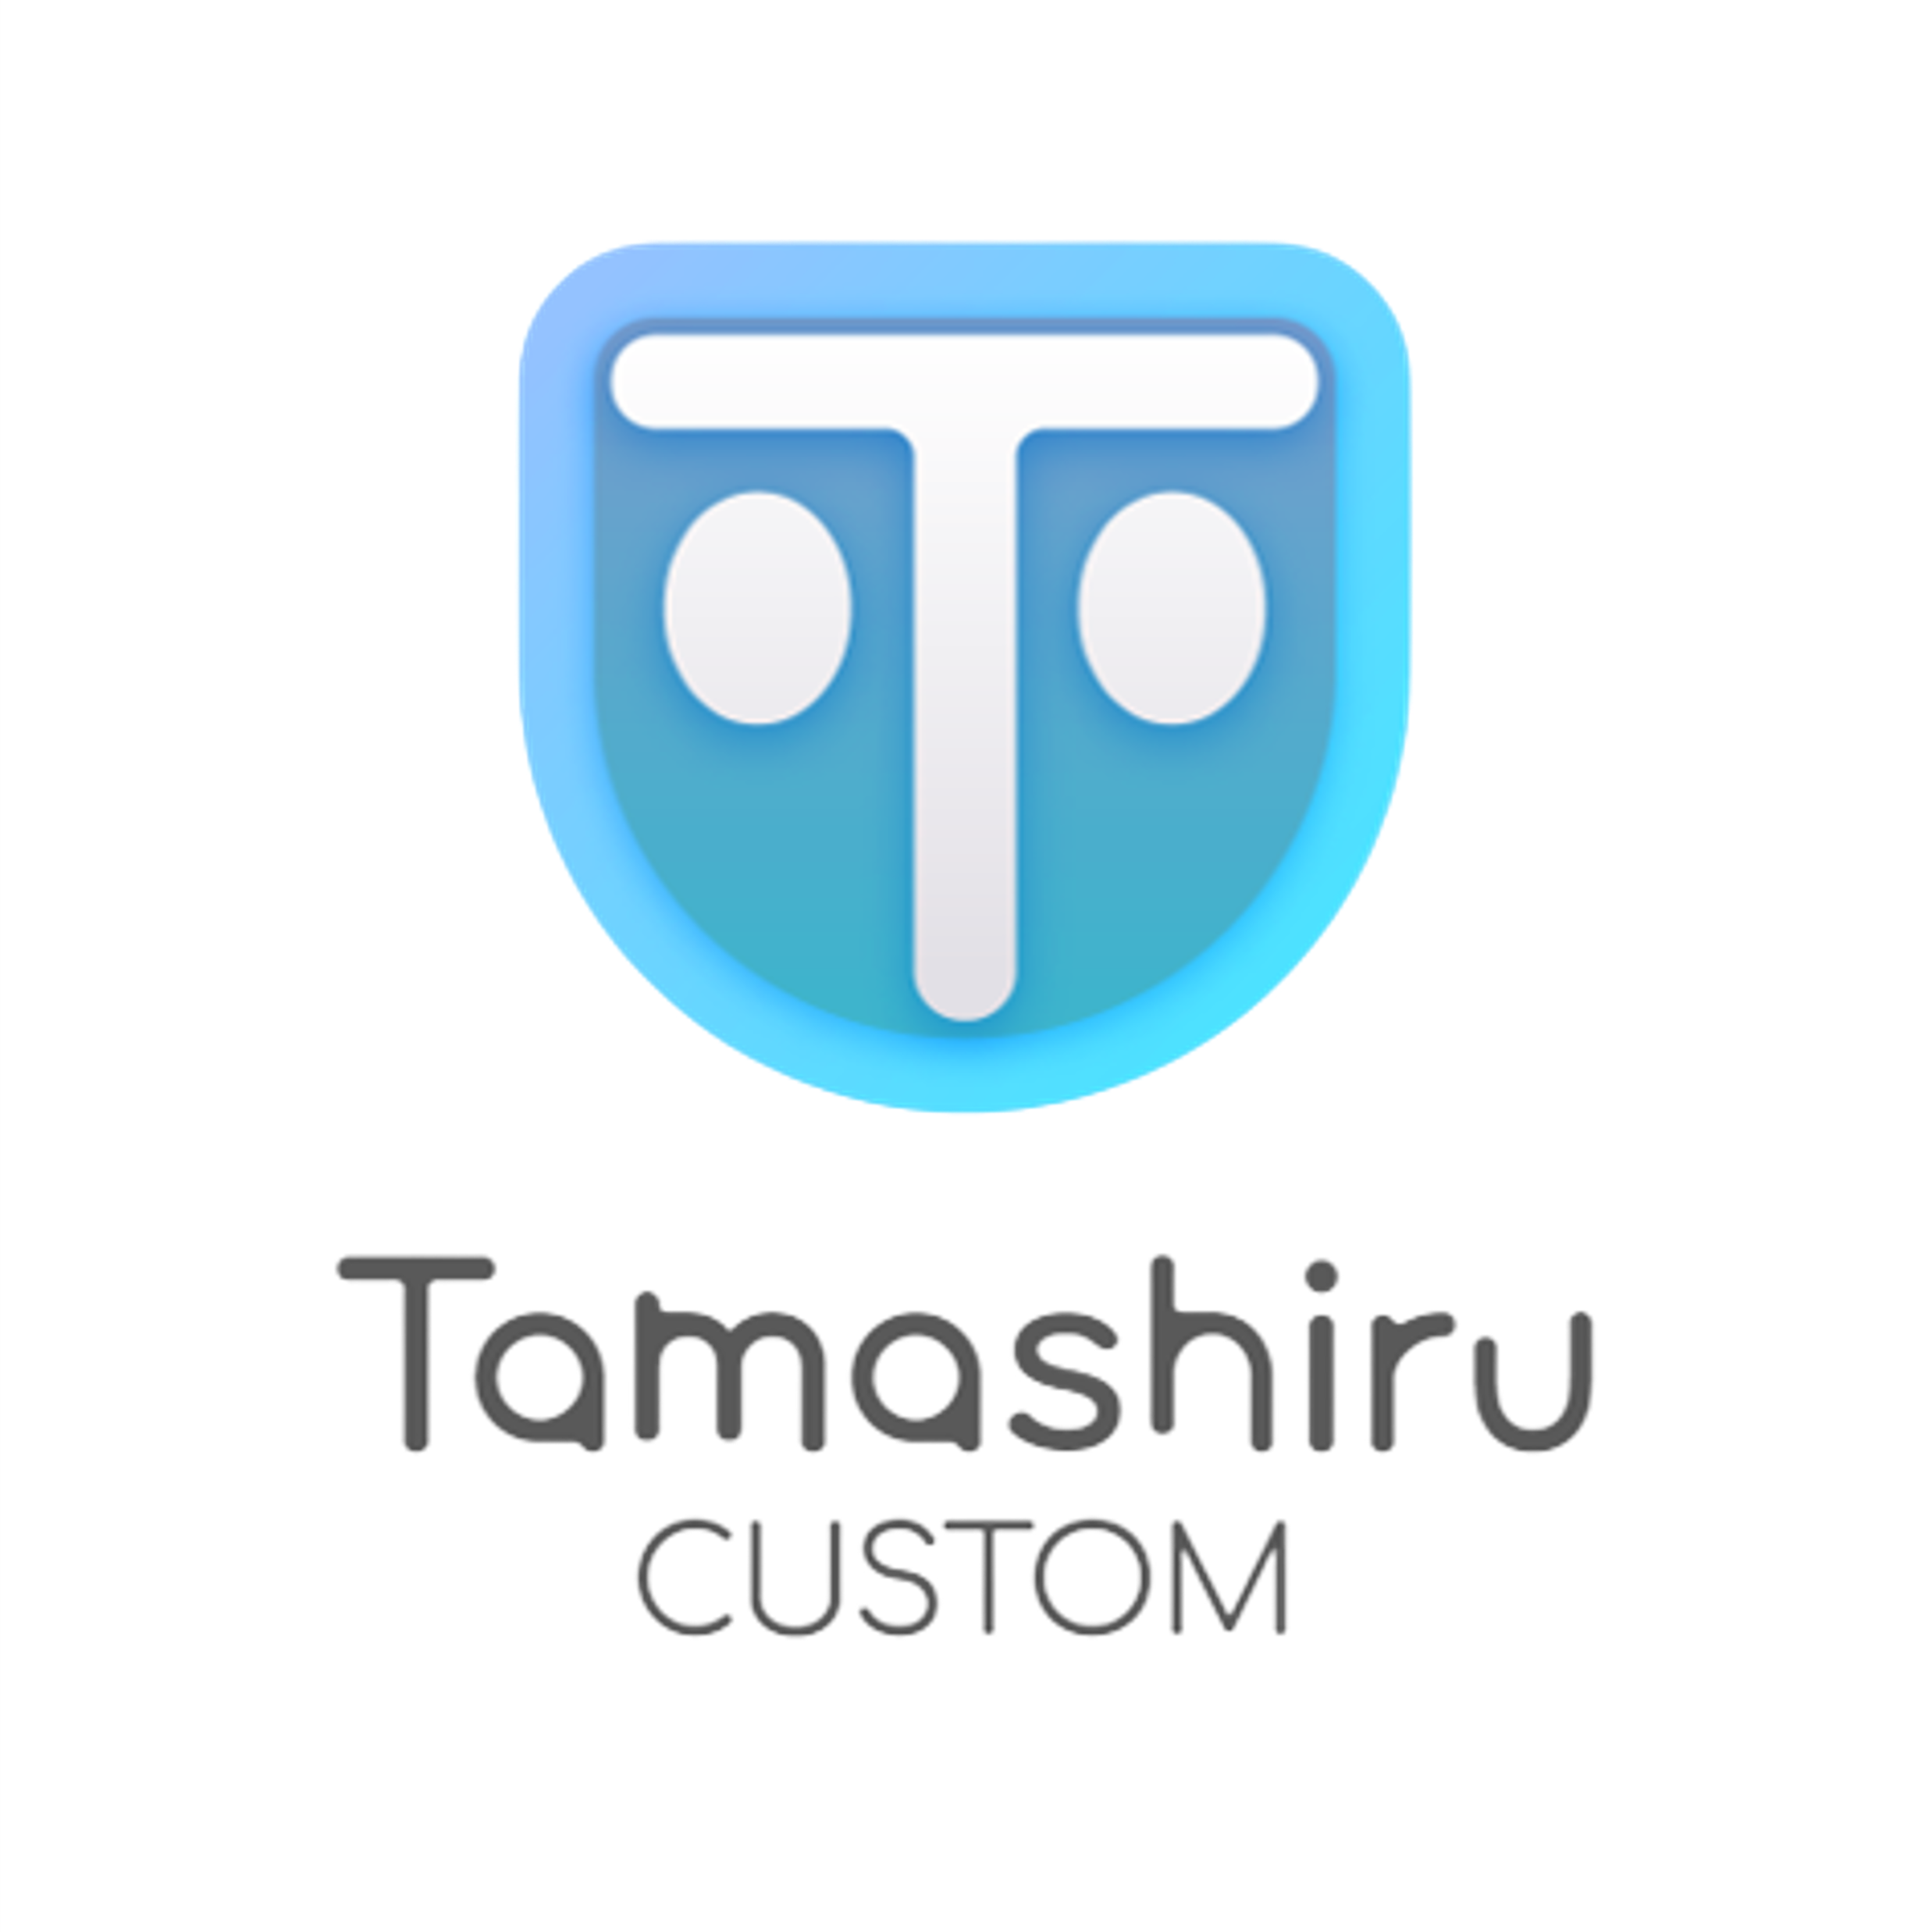 Tamashiru Custom